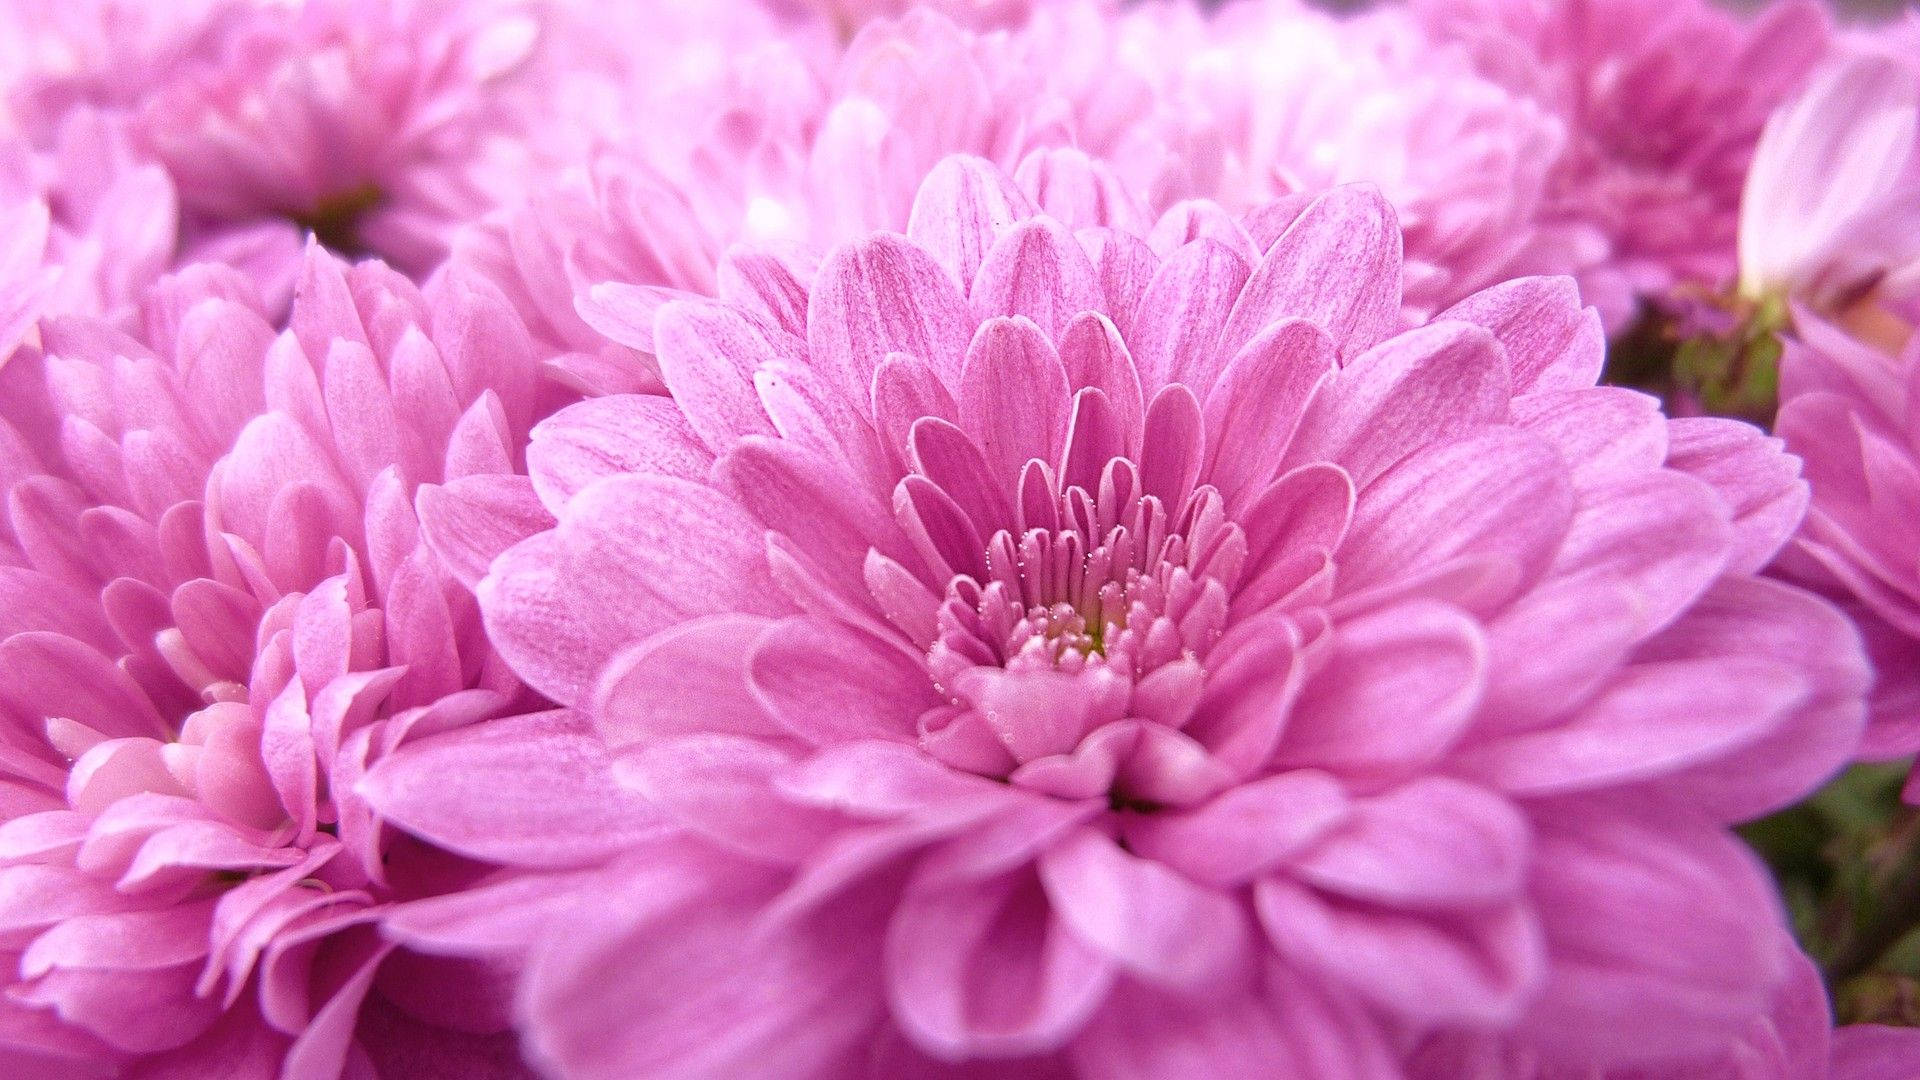 Cute Pink Flower Pieces Of Chrysanthemum